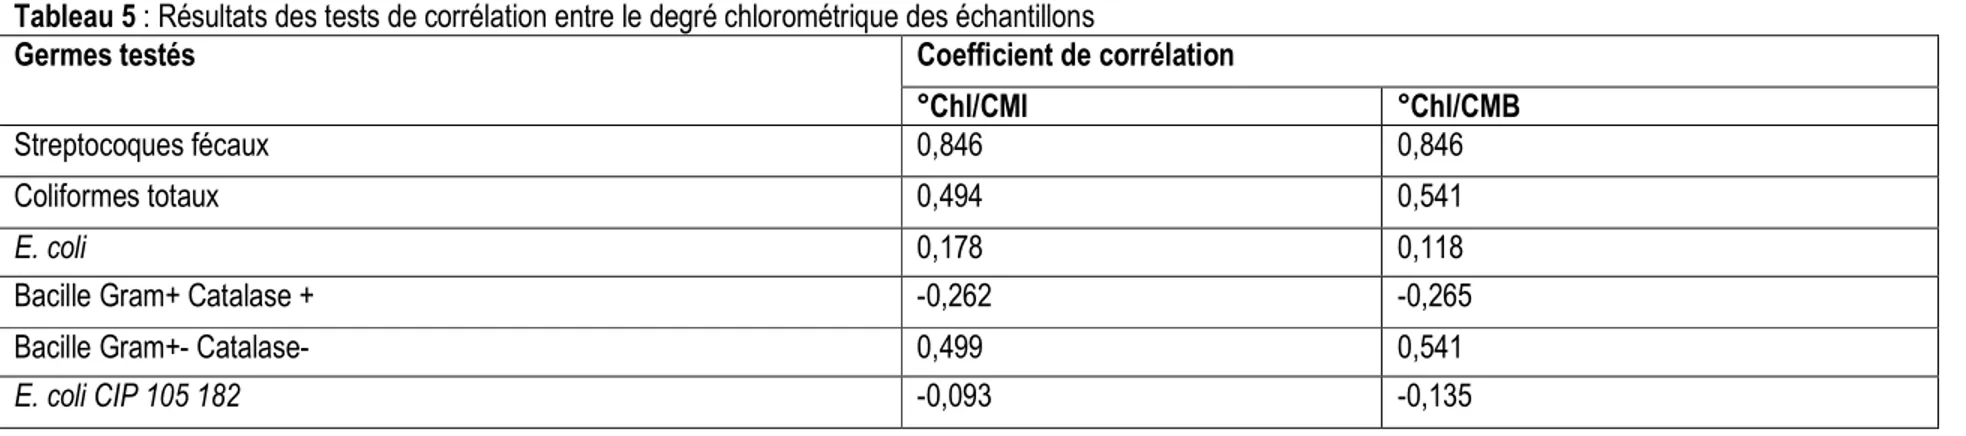 Tableau 5 : Résultats des tests de corrélation entre le degré chlorométrique des échantillons 